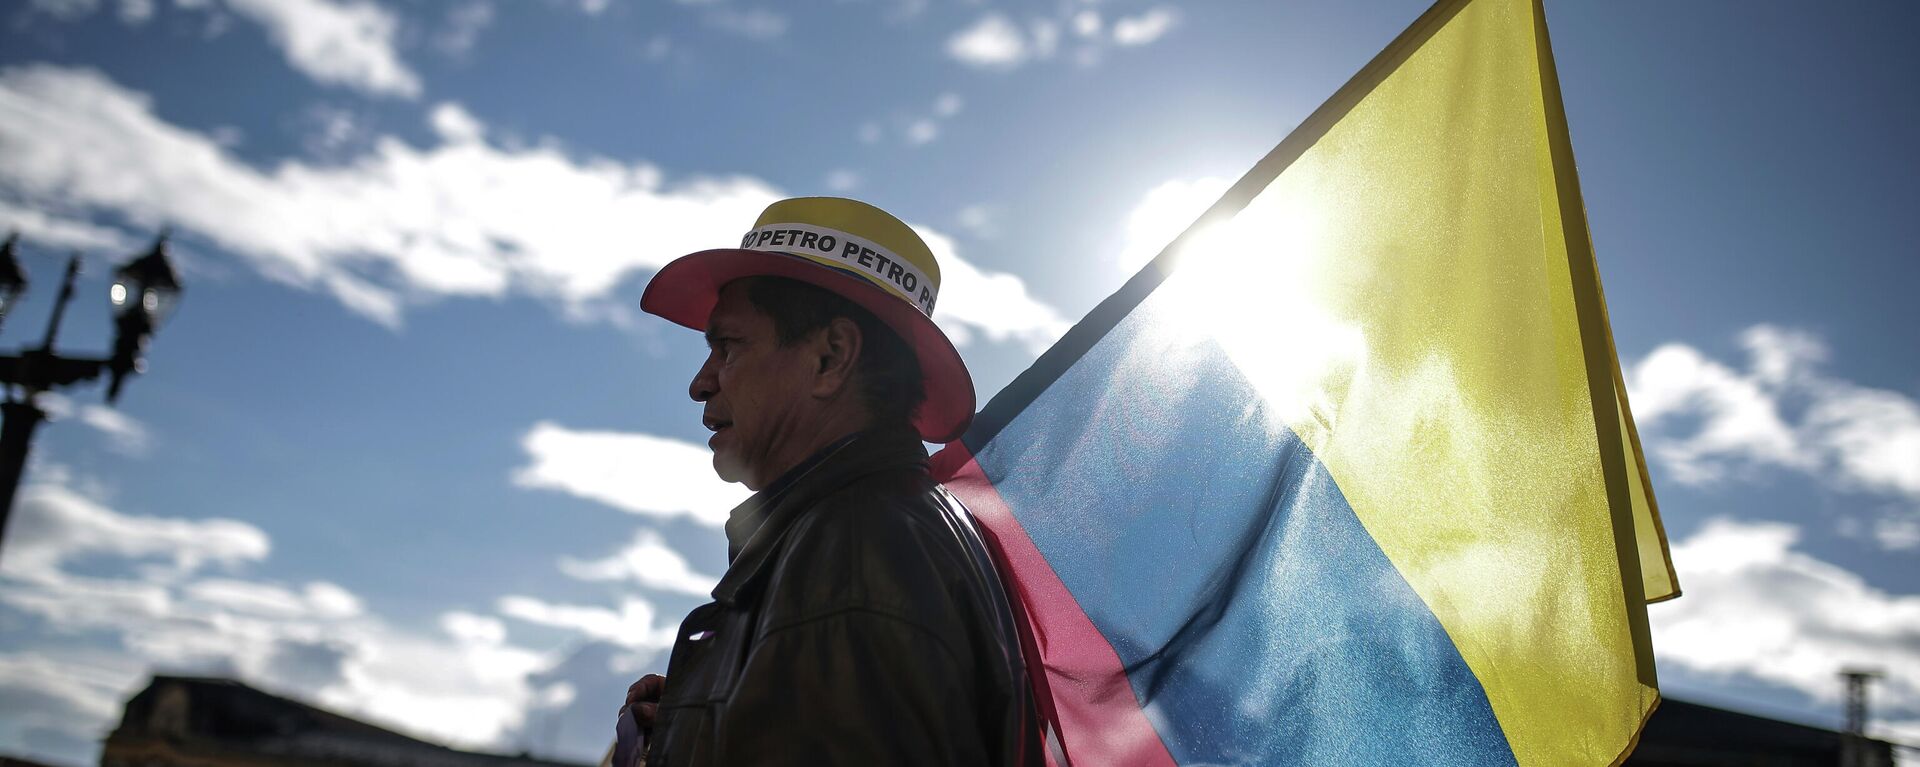 Partidario de Gustavo Petro sostiene la bandera de Colombia - Sputnik Mundo, 1920, 30.05.2022